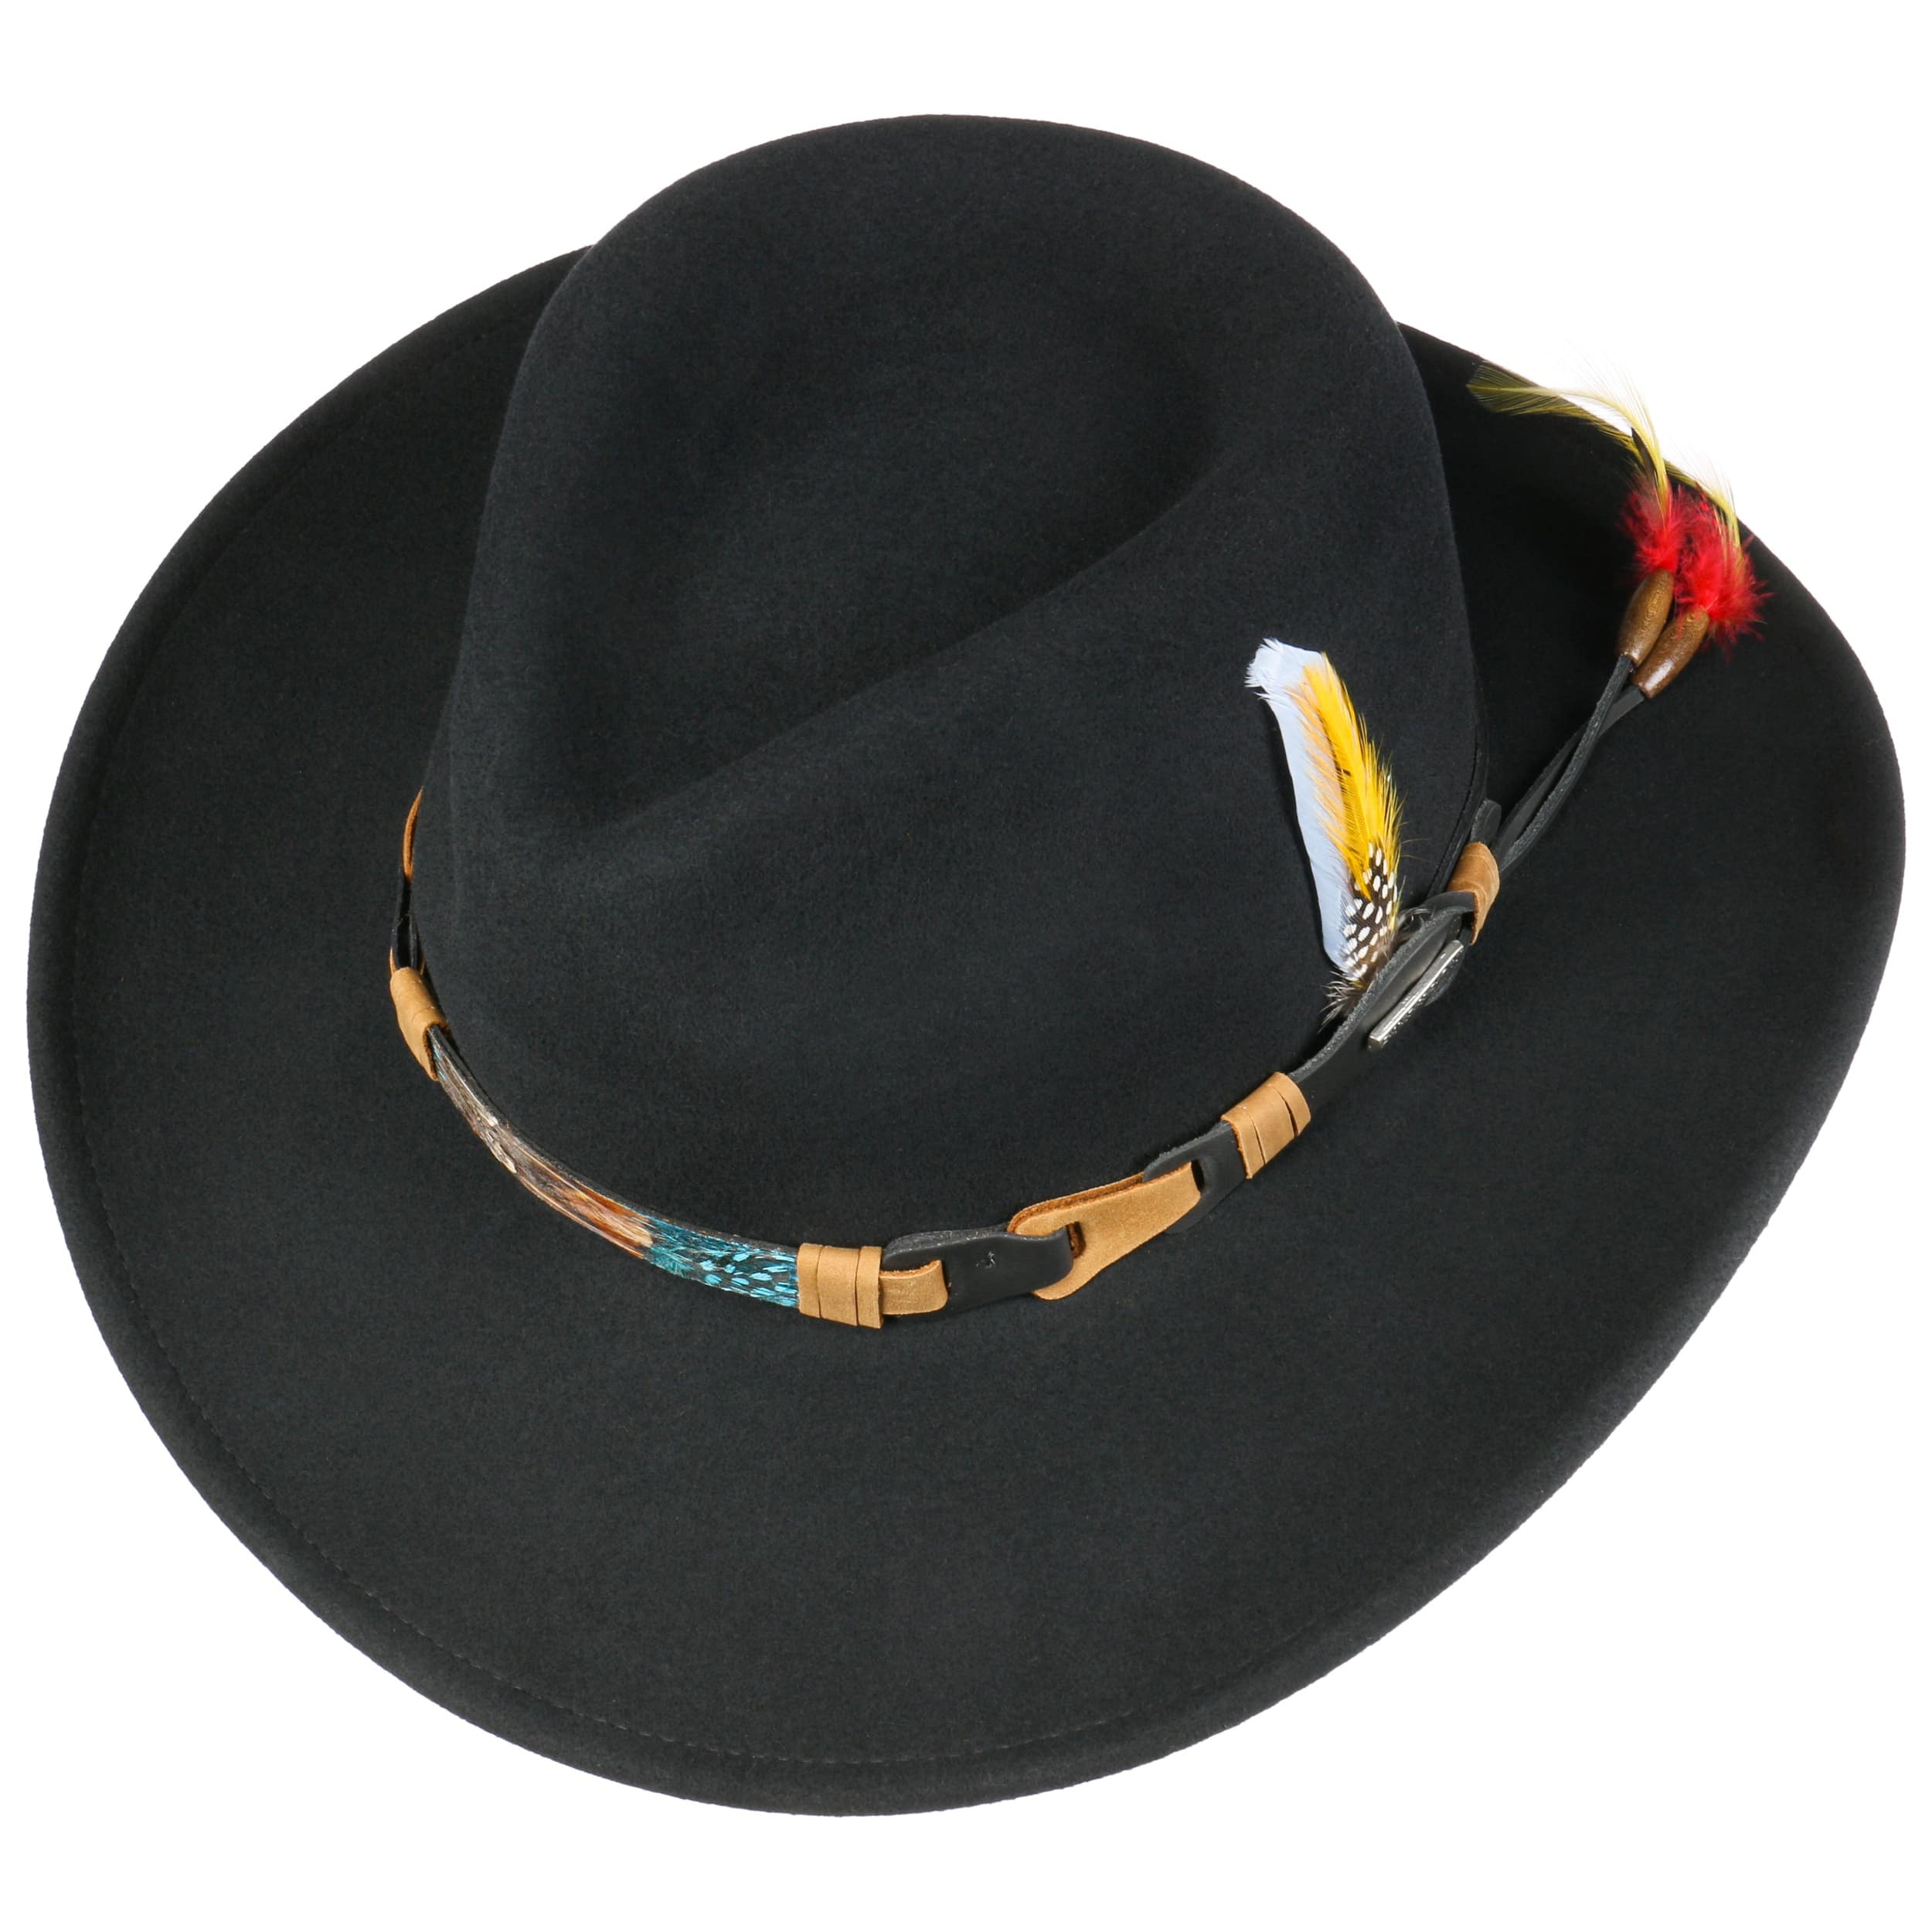 Kingsley VitaFelt Western Hat by Stetson - 219,00